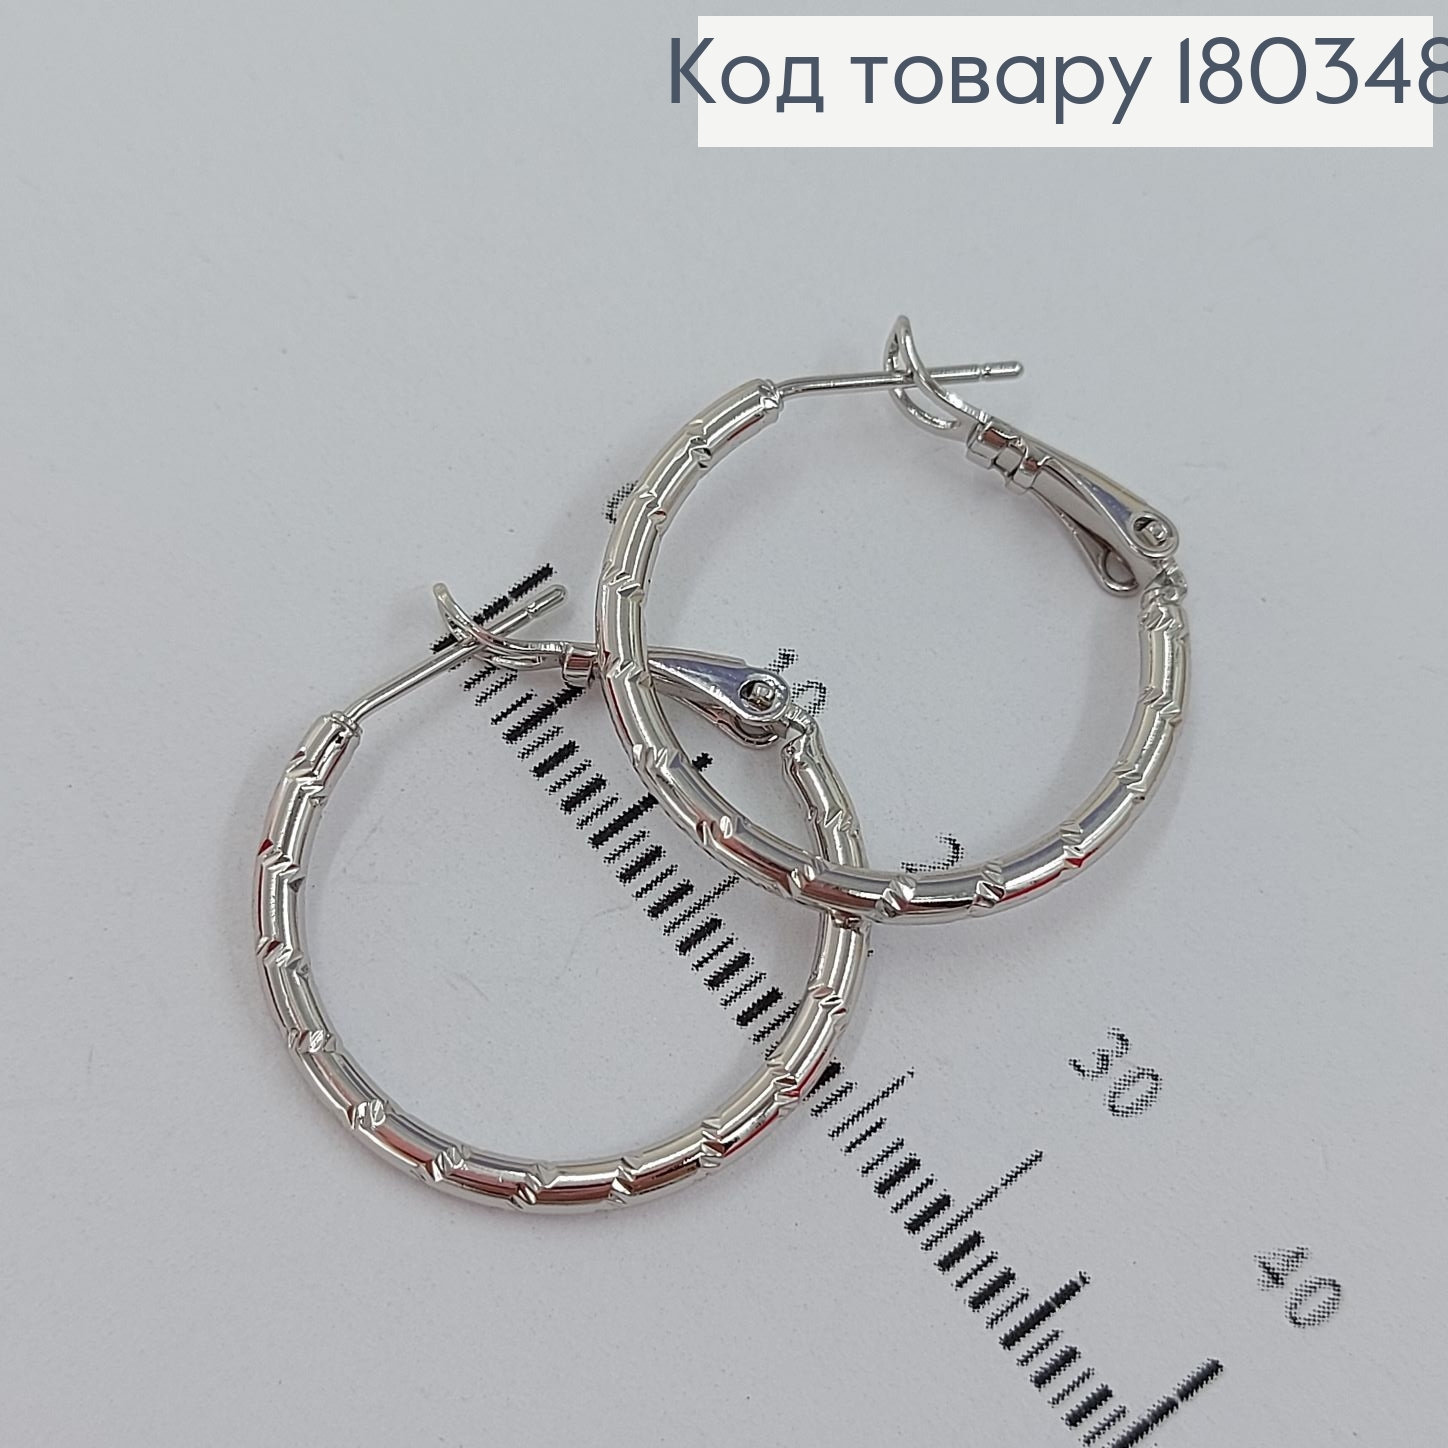 Сережки кільця 2,5 см родоване   Xuping 180348 фото 2